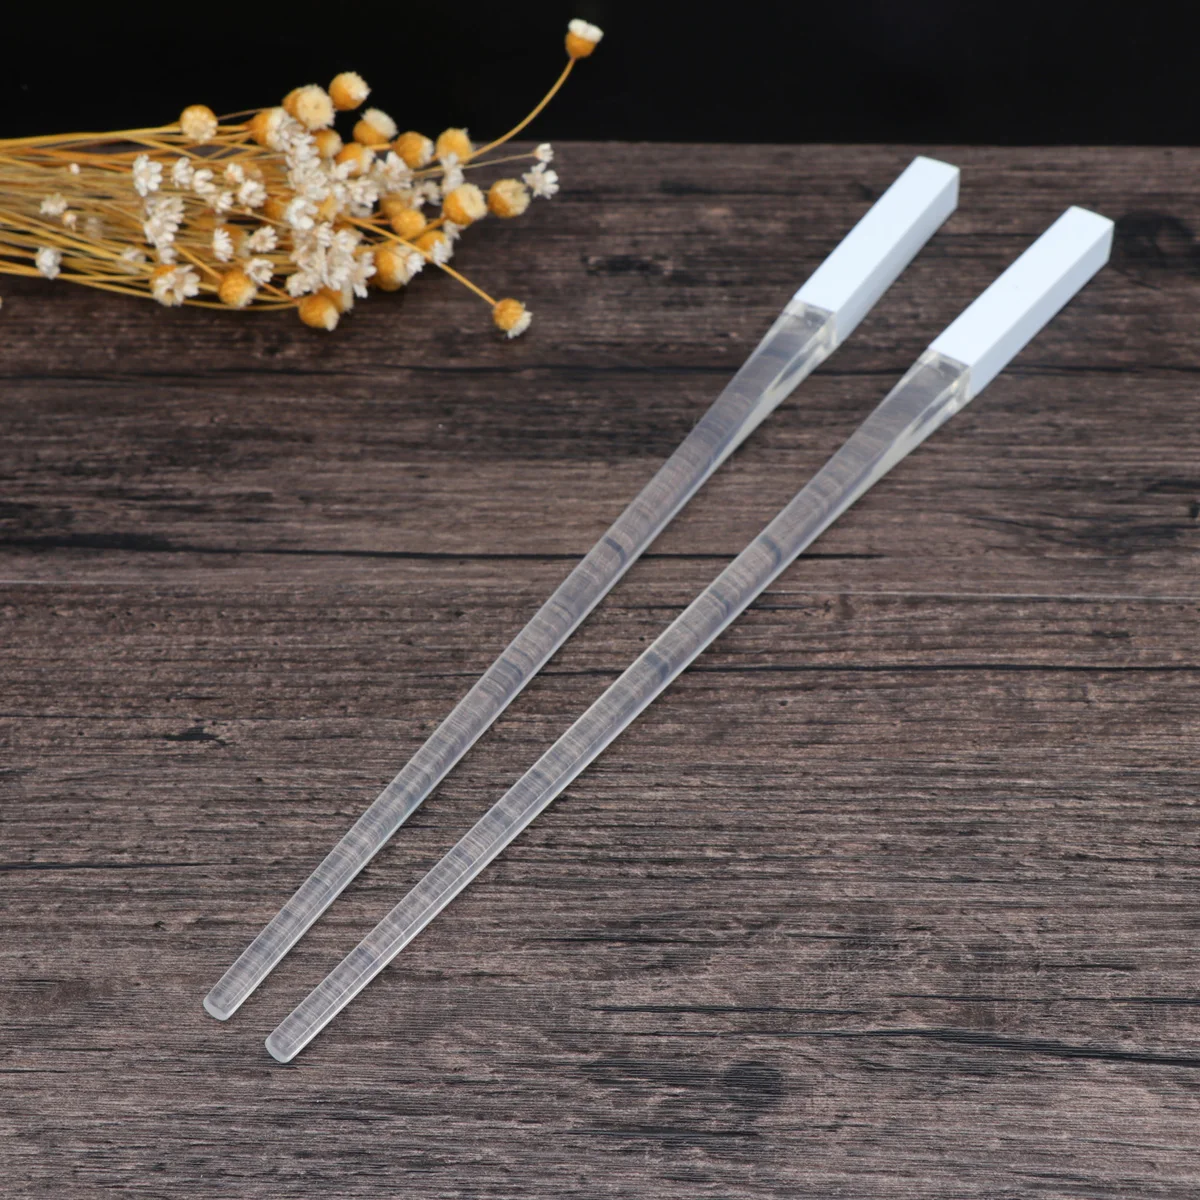 Ireav 1 Pair LED Chopsticks Light Up Chopsticks Lightsaber Durable Lightweight Portable Tableware Reusable Blue